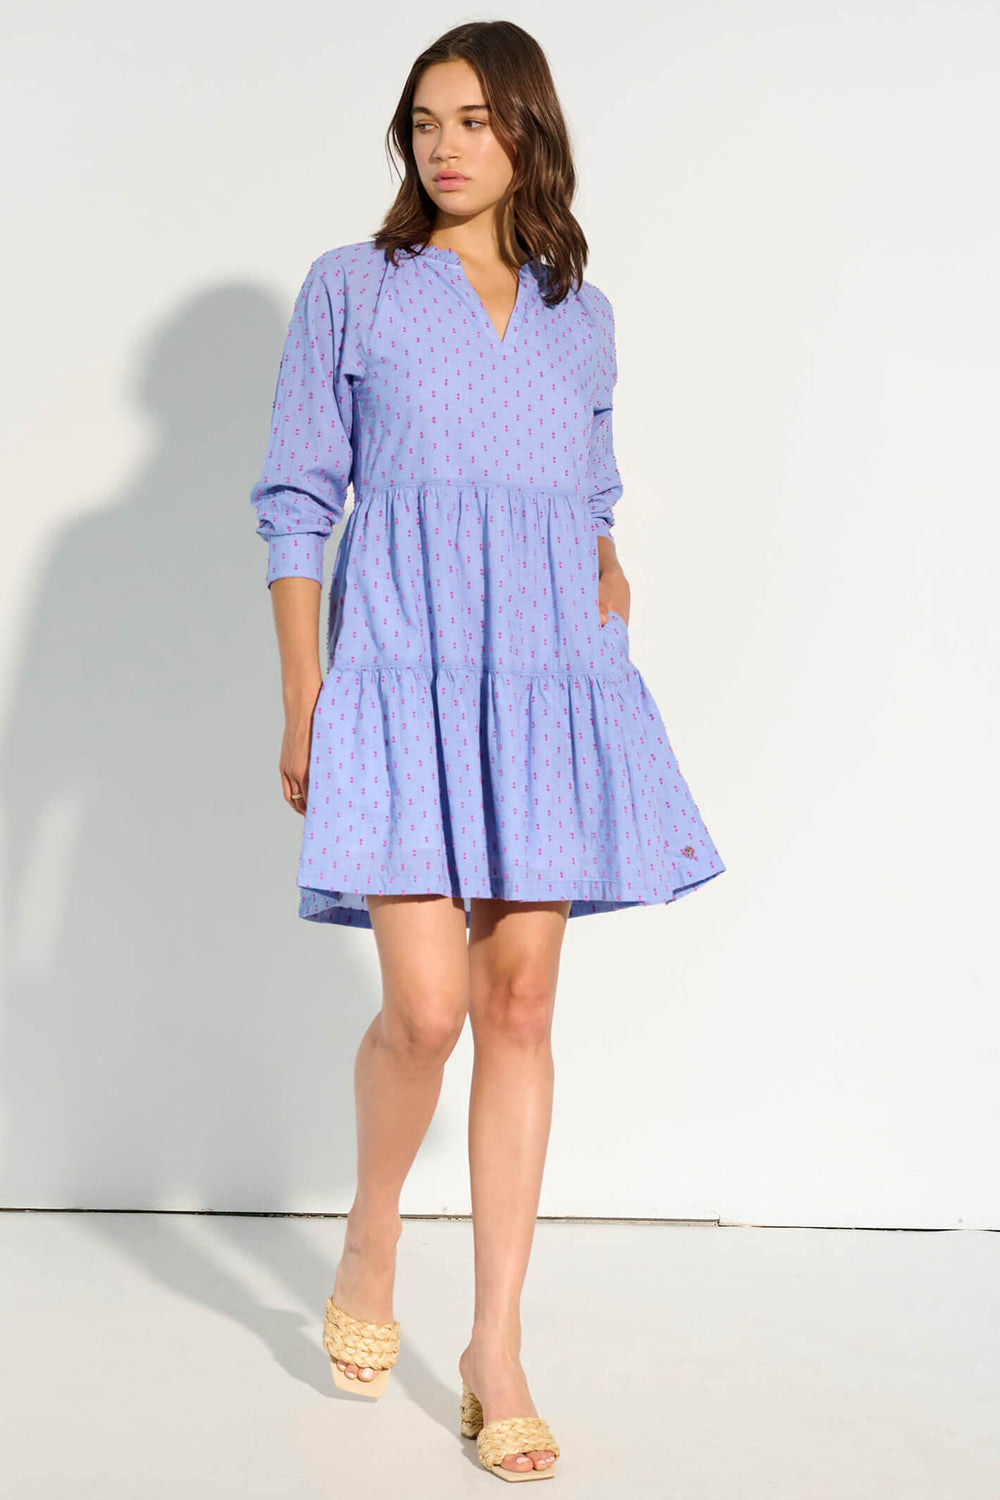 Hatley MDL1481 Blue Maddy Dress - Shirley Allum Boutique